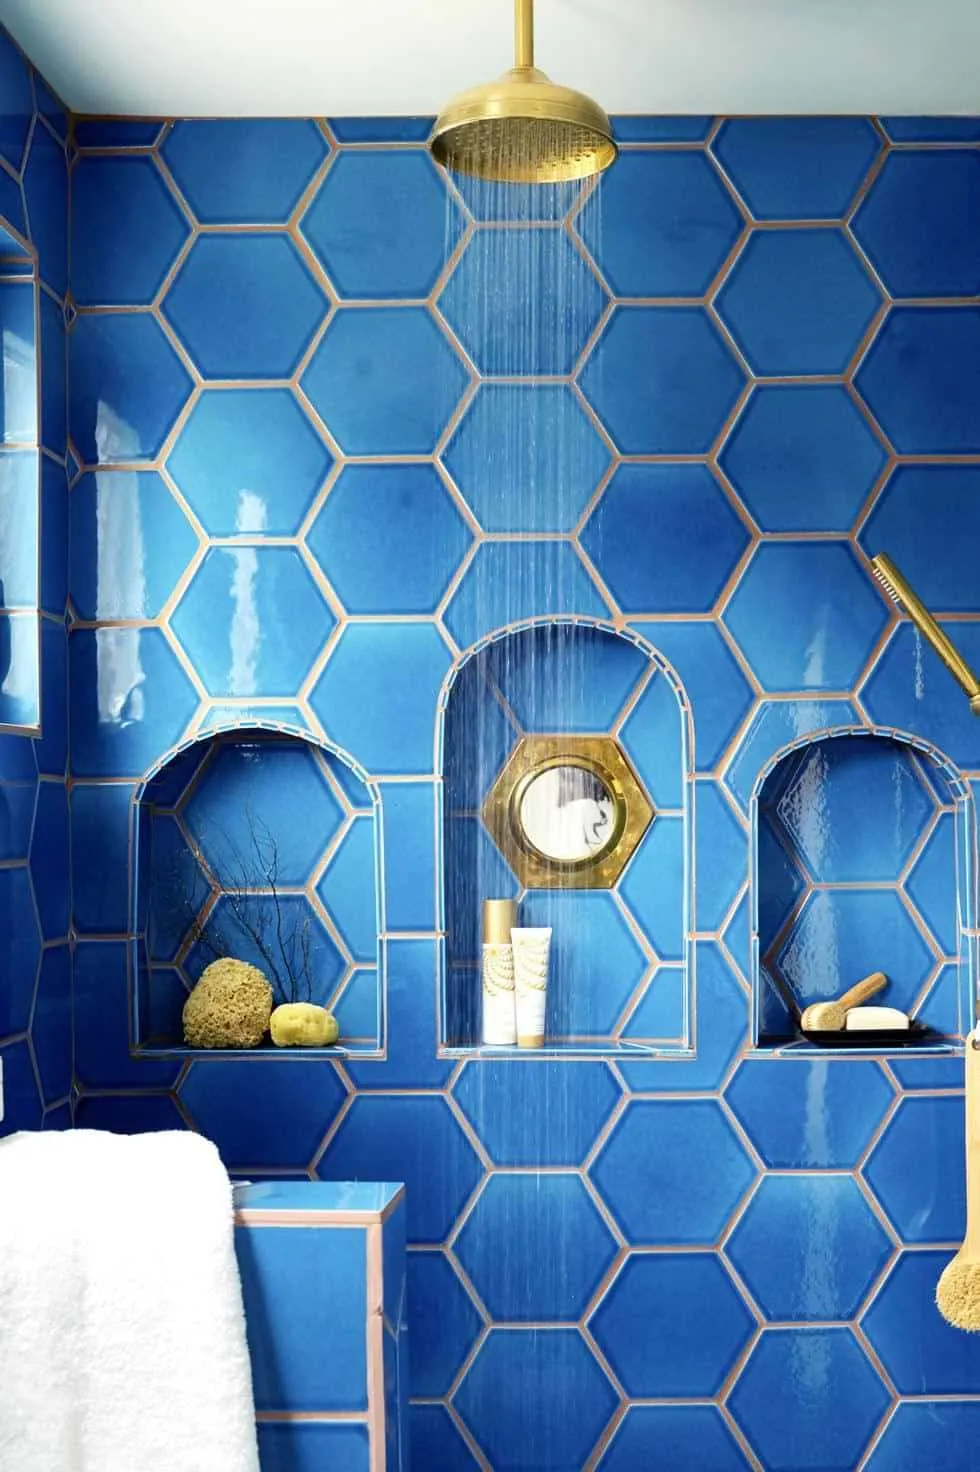 Hexagonal blue tiles in shower